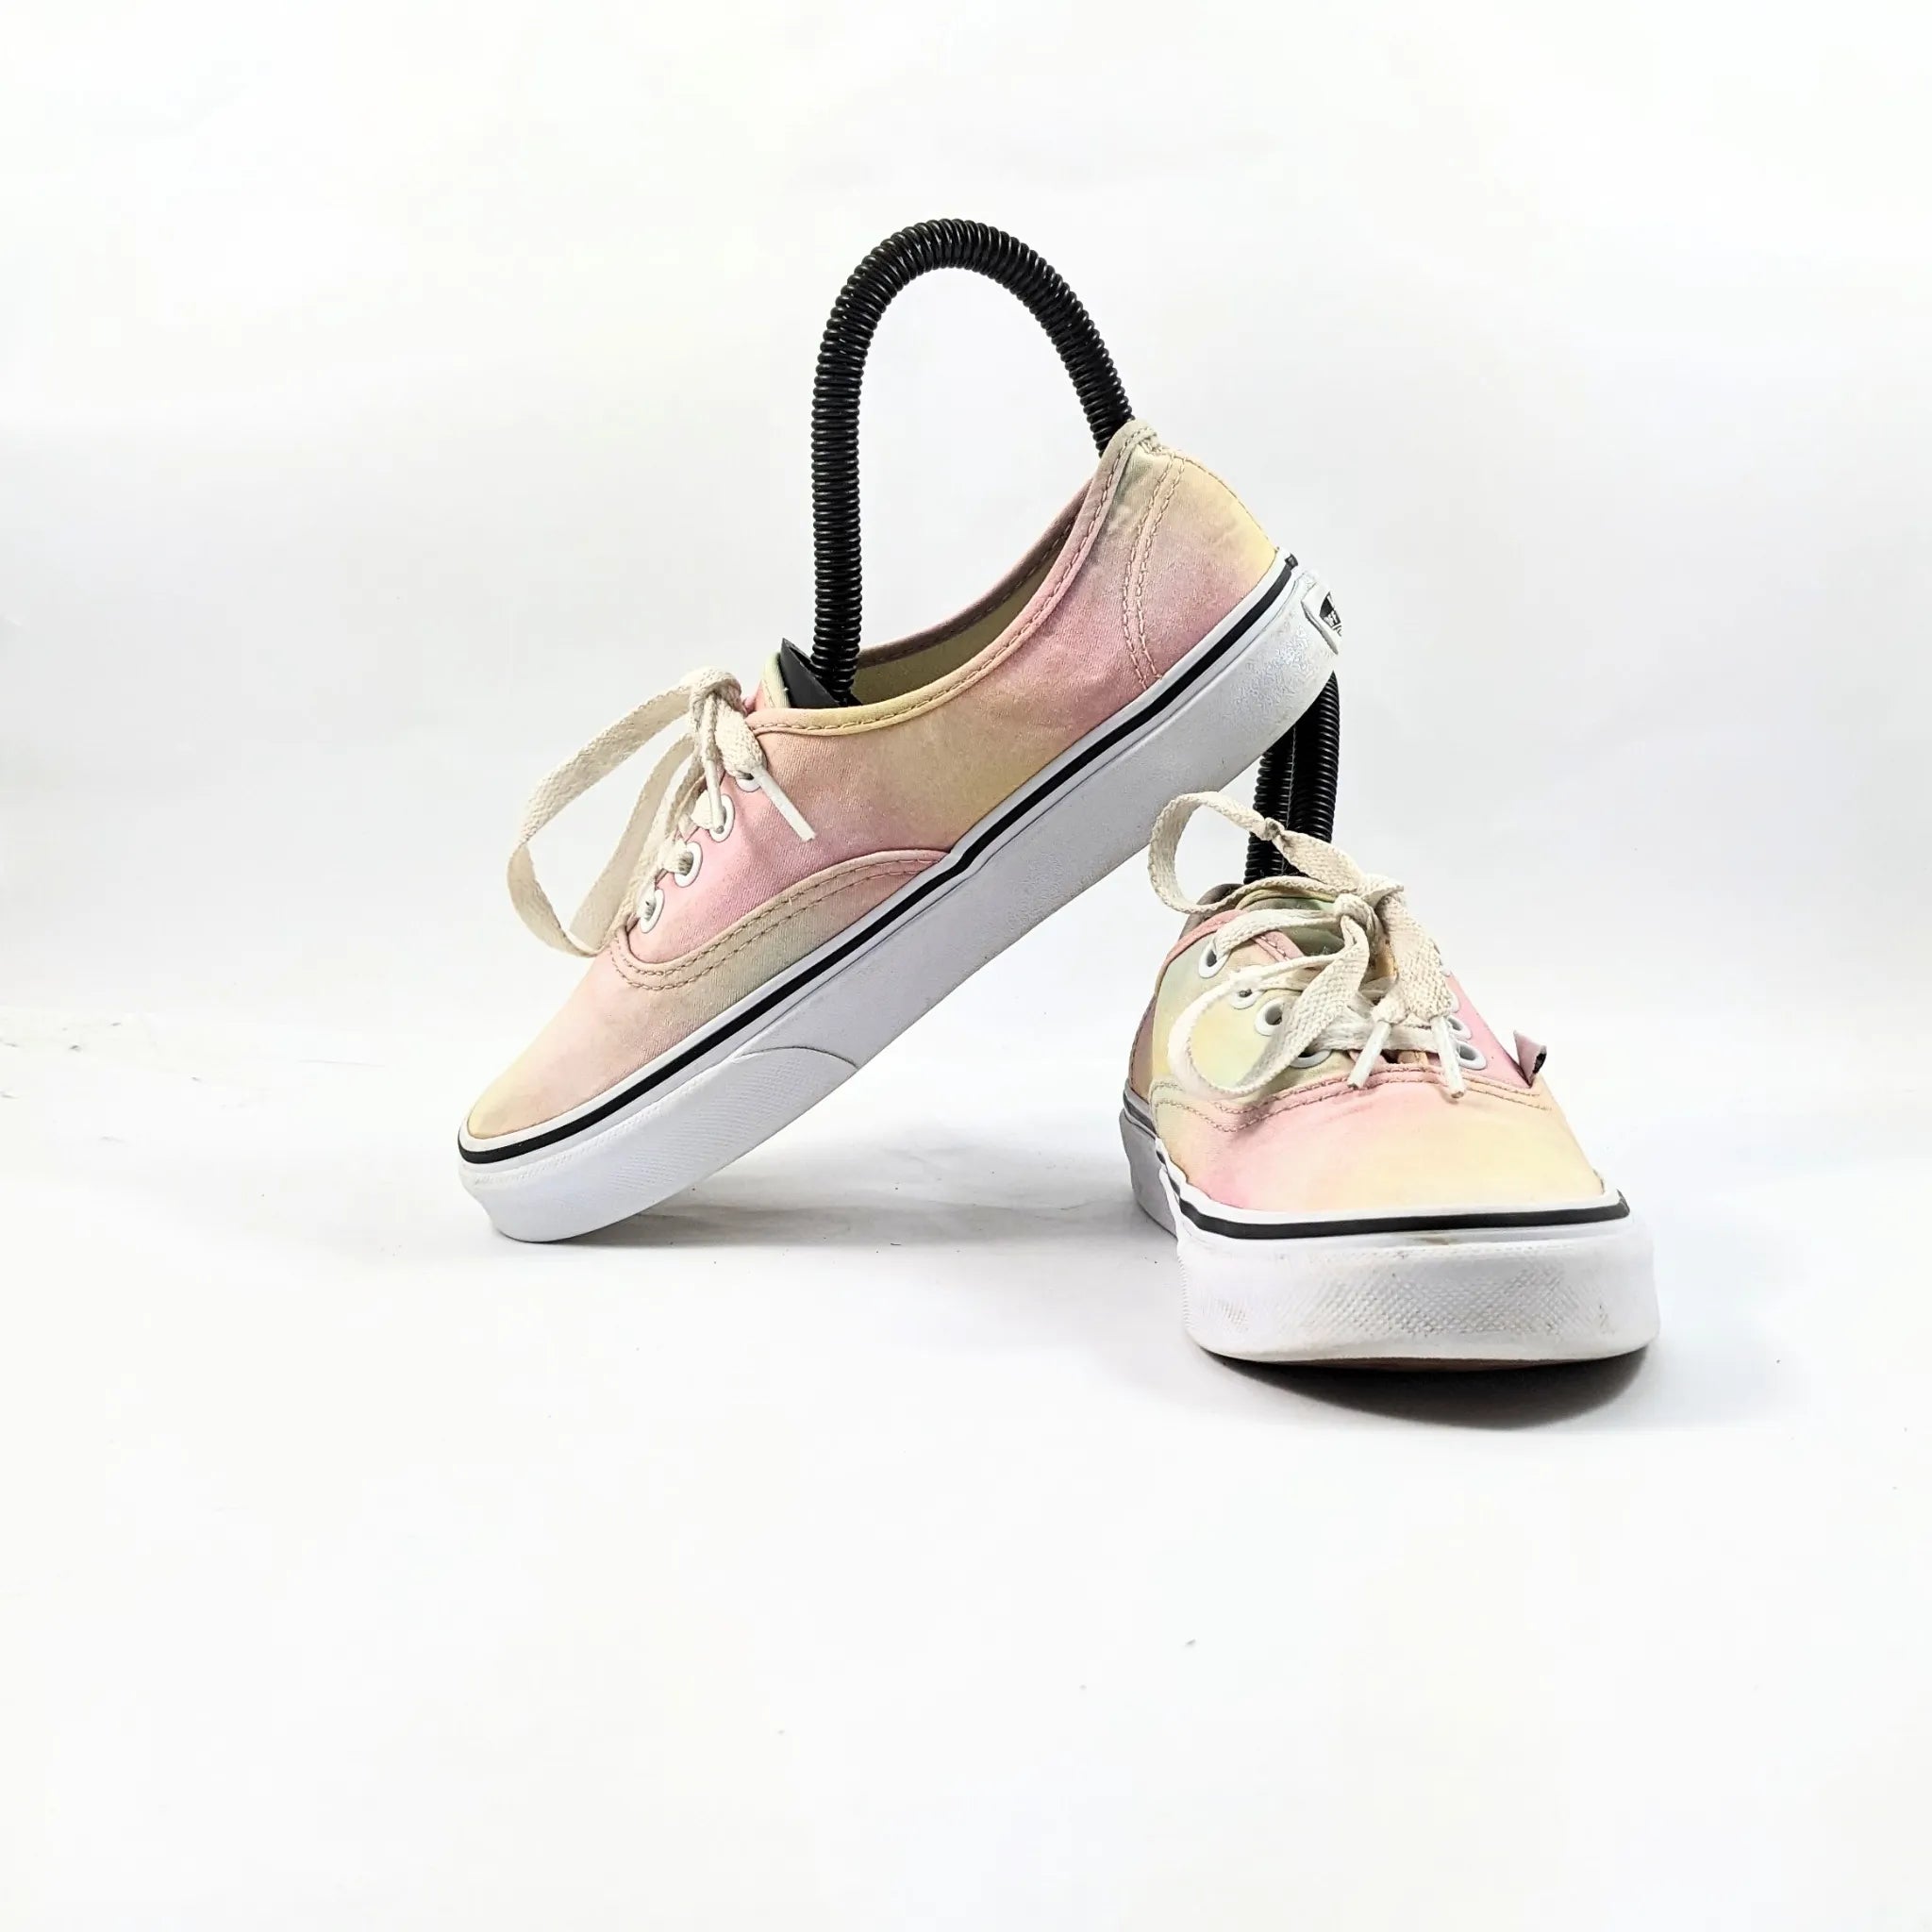 Vans Pink Sneakers